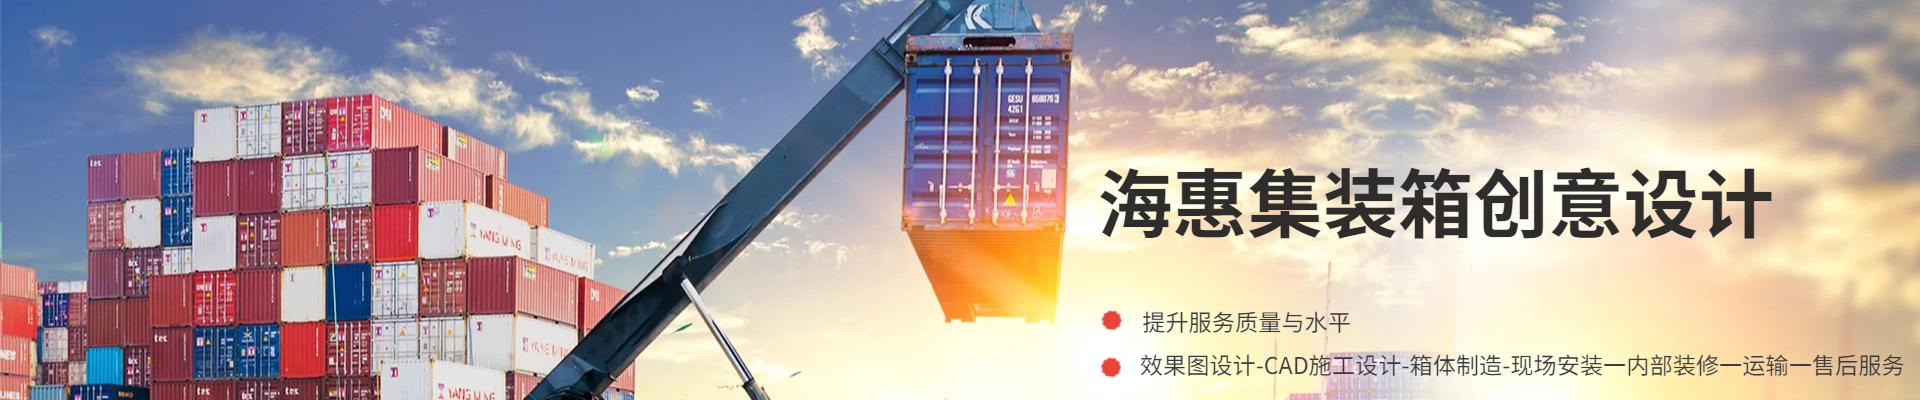 深圳市海惠集装箱创意设计有限公司公司介绍